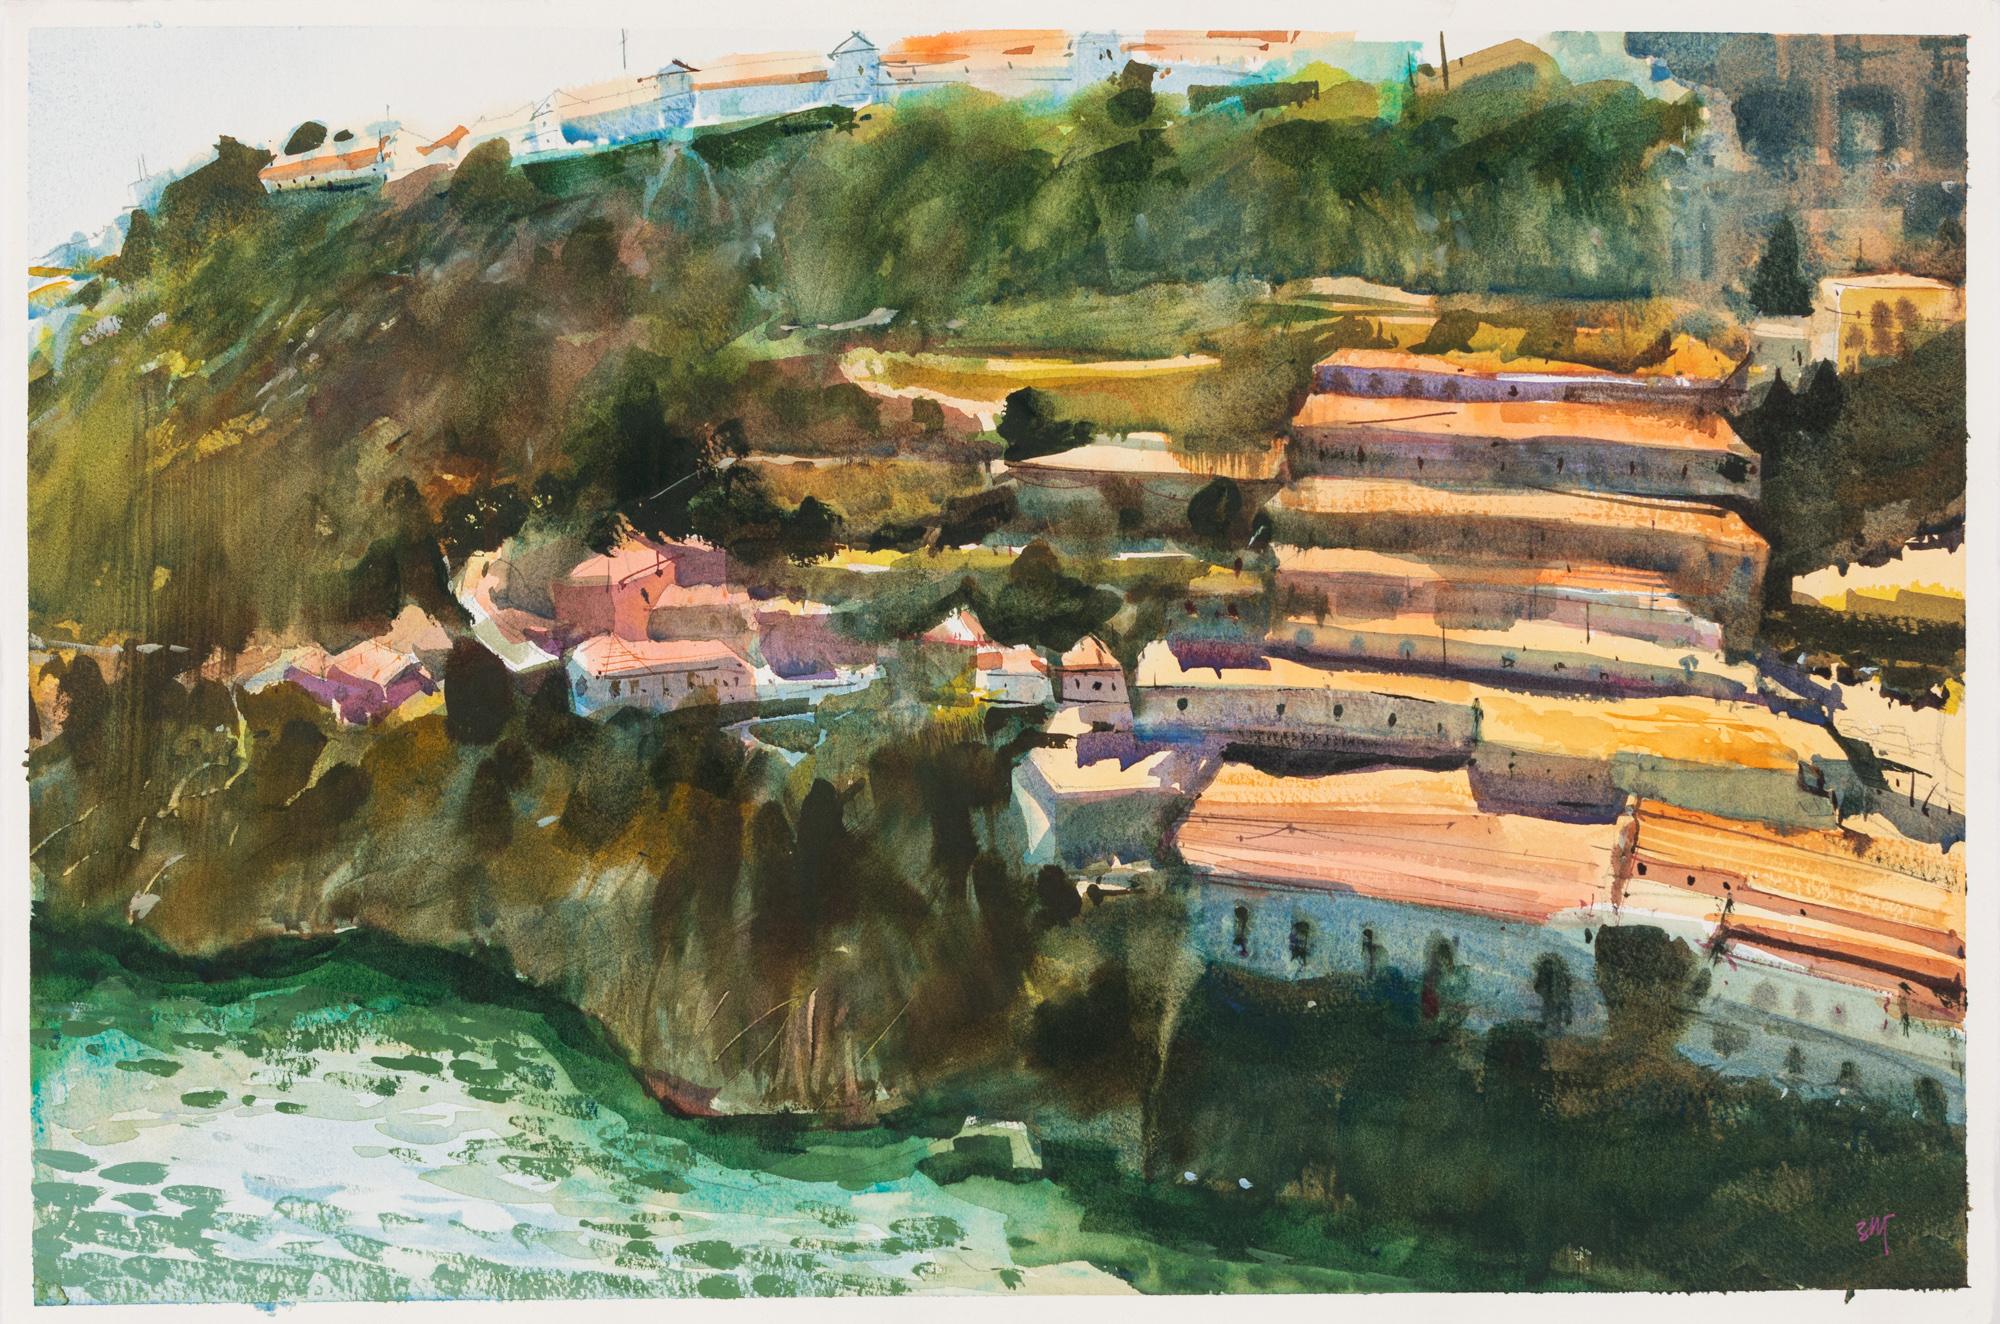 Landscape Painting Uma Kelkar - « Sunny Porto », une peinture à l'aquarelle des maisons de Cliff Side au Portugal